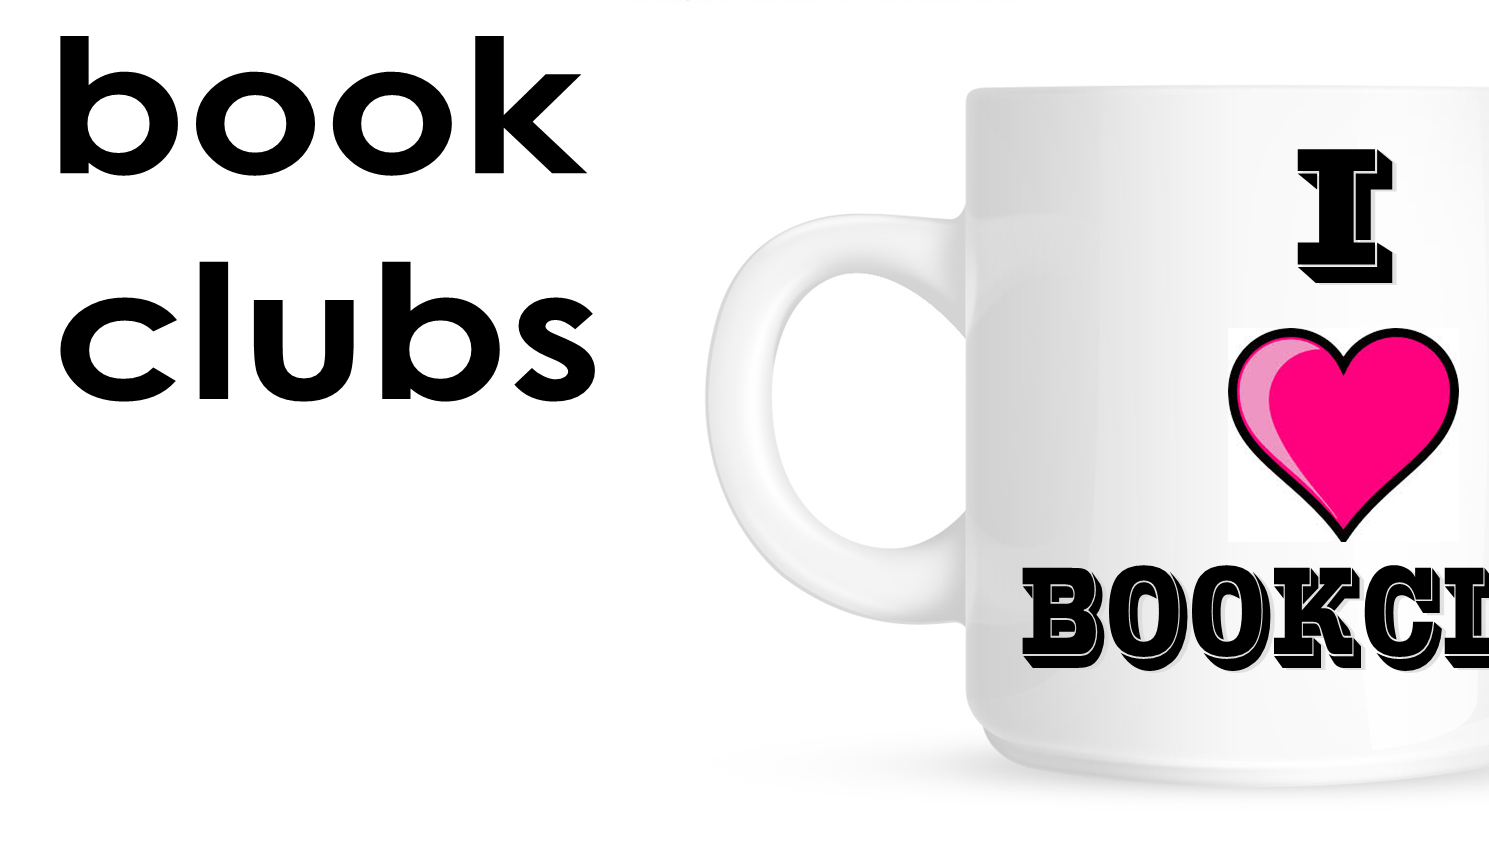 book clubs